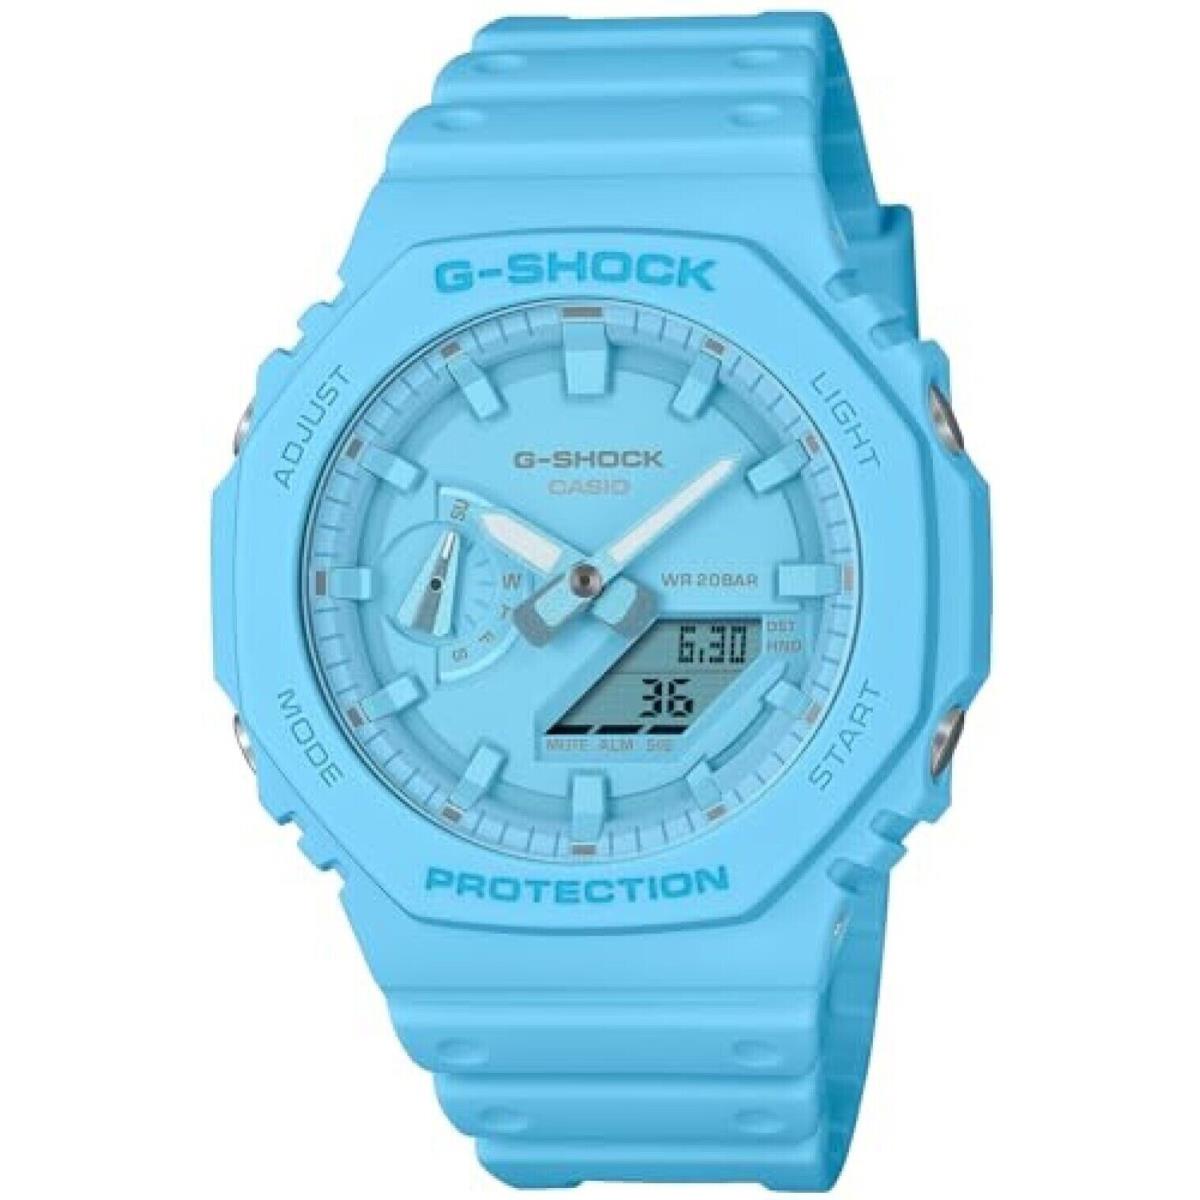 Casio G-shock GA2100-2A2 Analog Digital Blue Limited Edition Watch